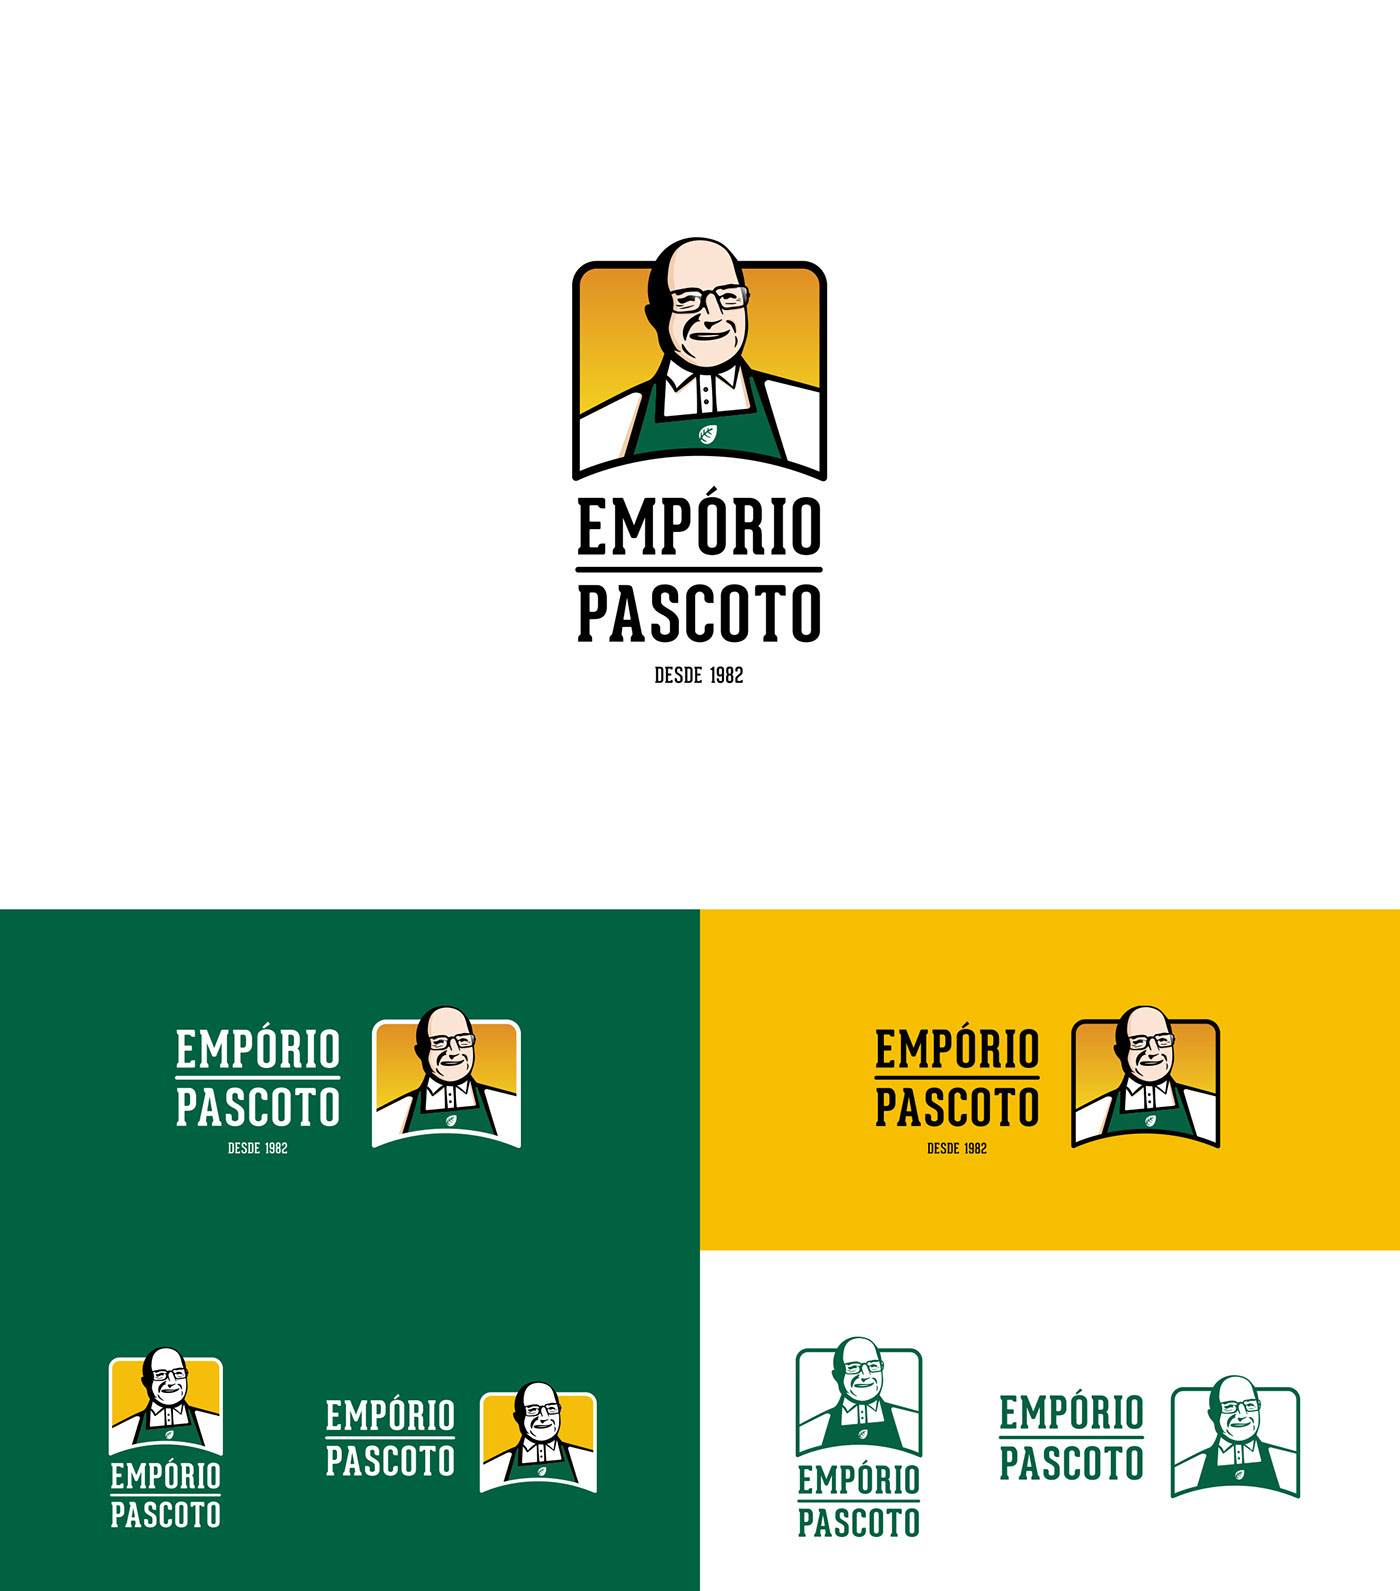 rebranding branding  Health Food  Emporio pascoto Nature green yellow store